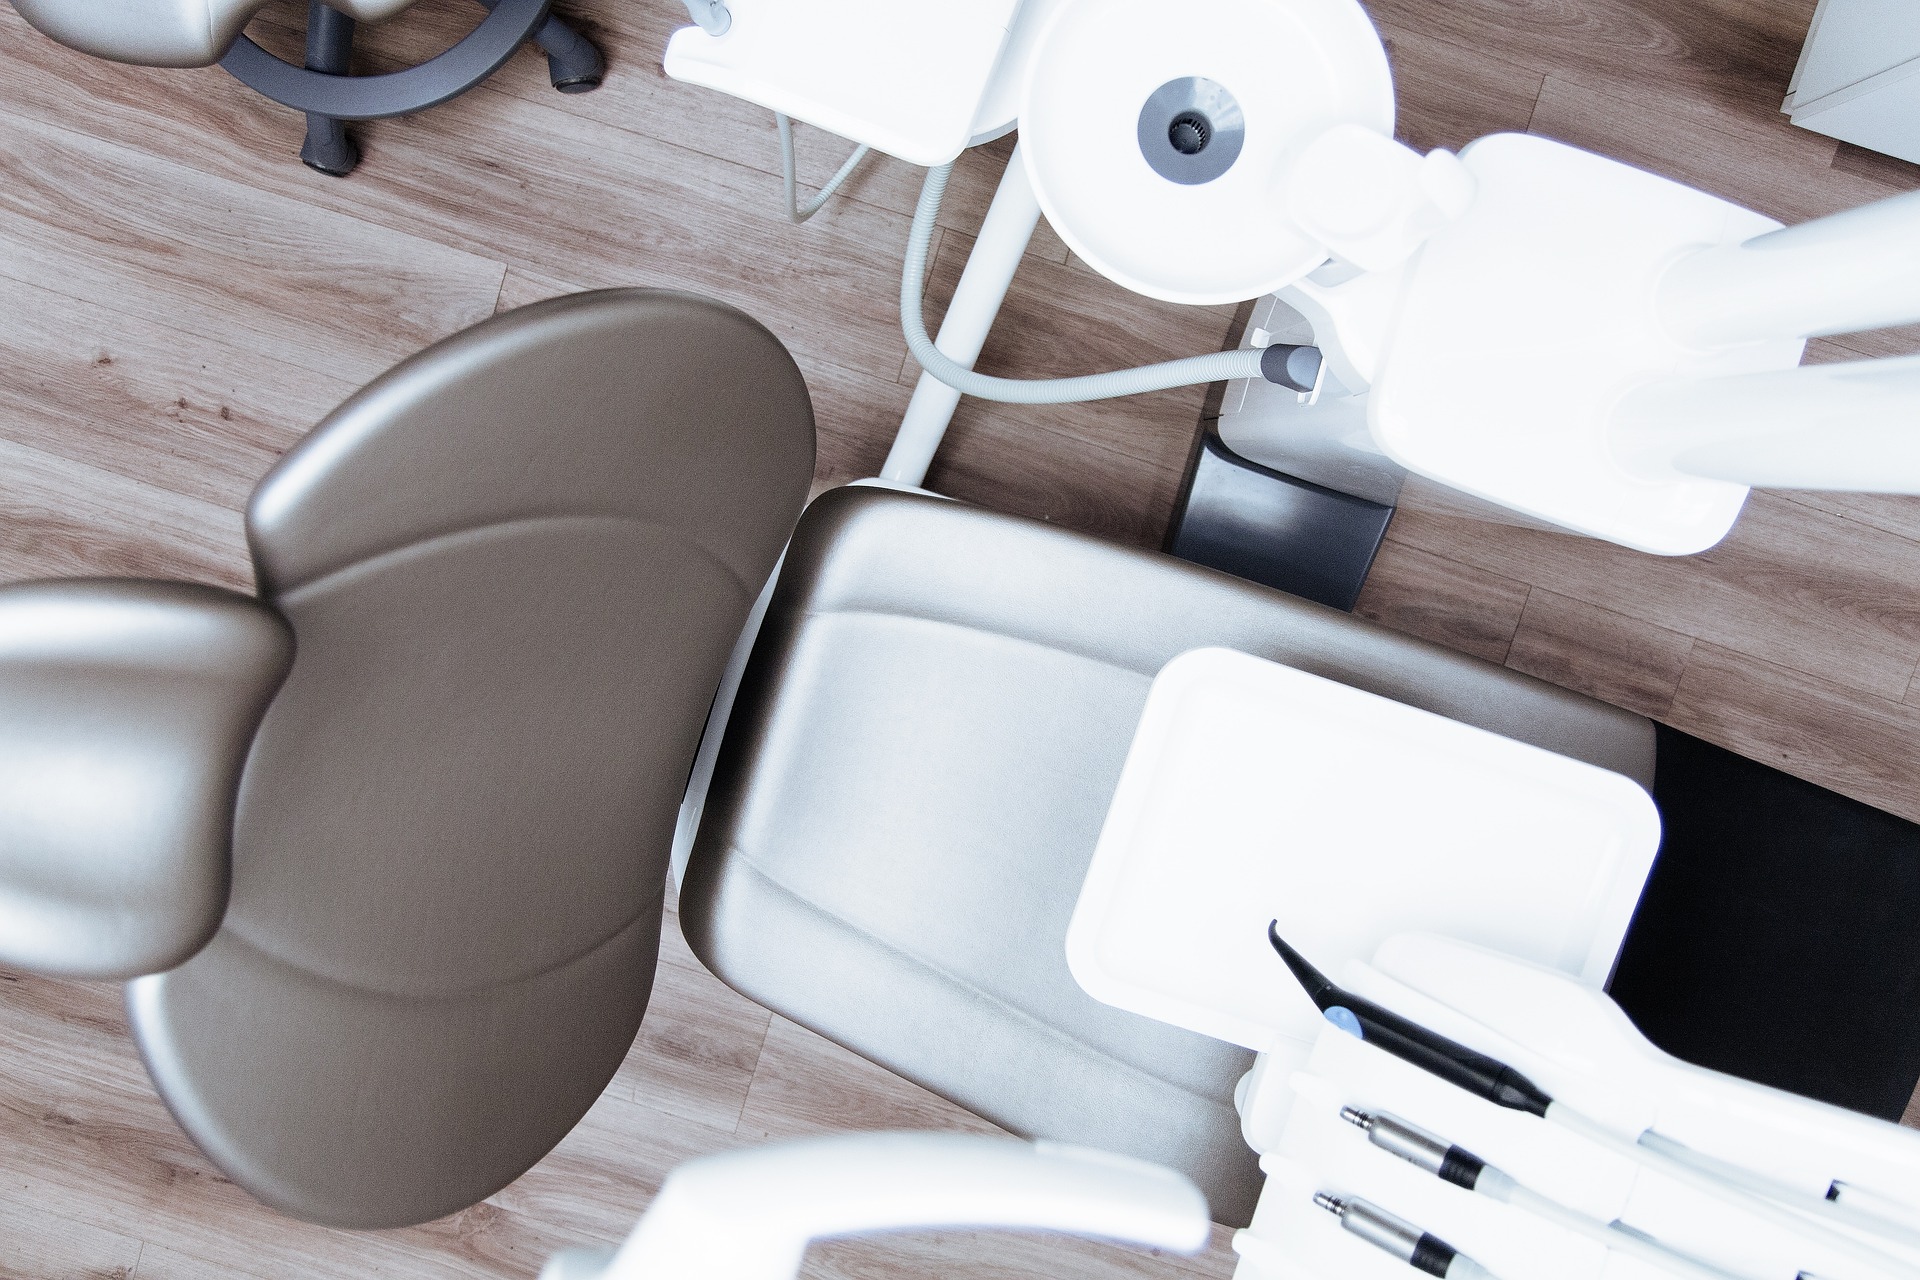 先天性異常の場合に歯列矯正は保険適用される